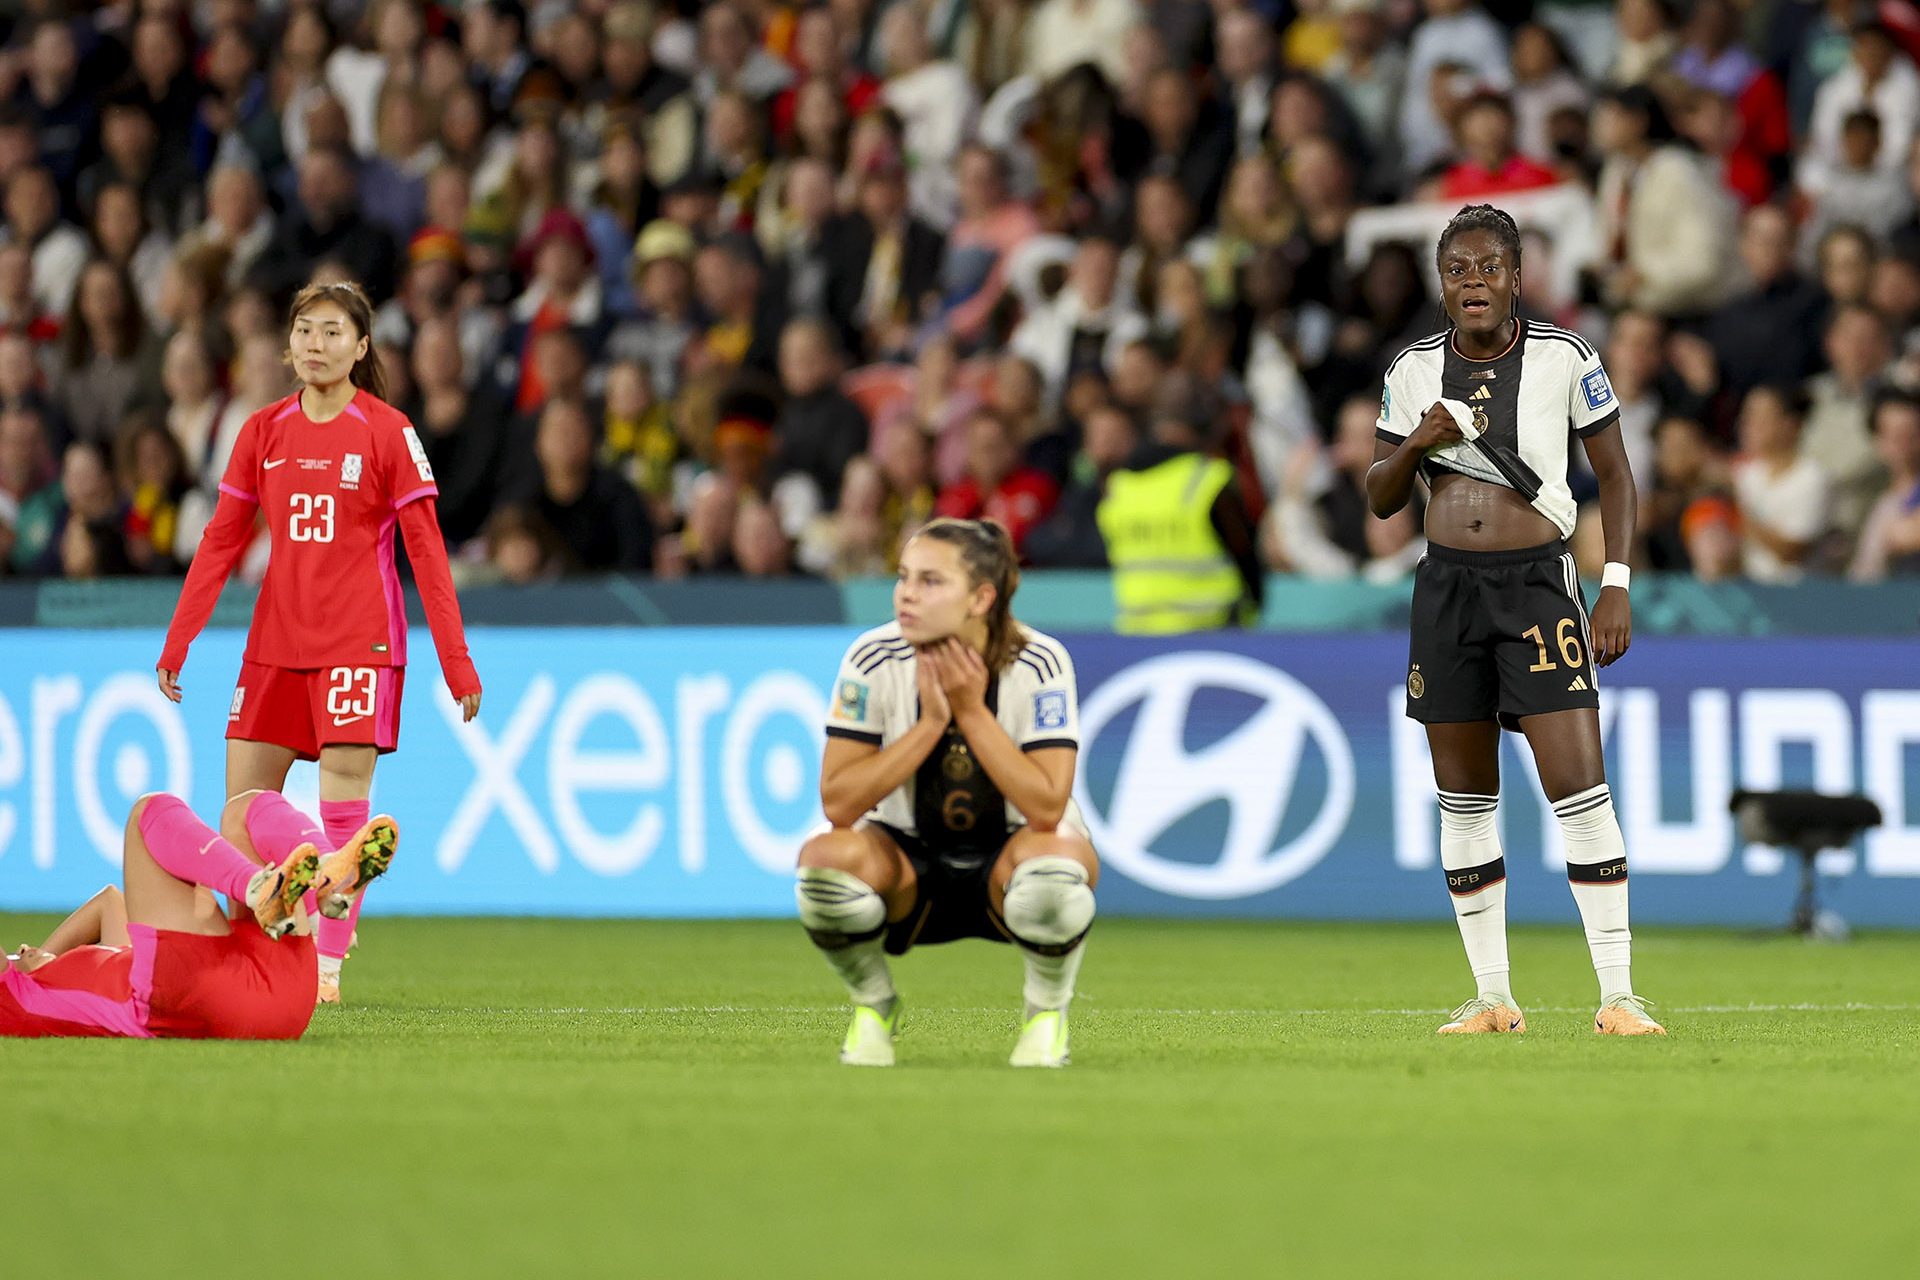 Voetbal: Duitsland uitgeschakeld in de groepsfase op het WK voor vrouwen